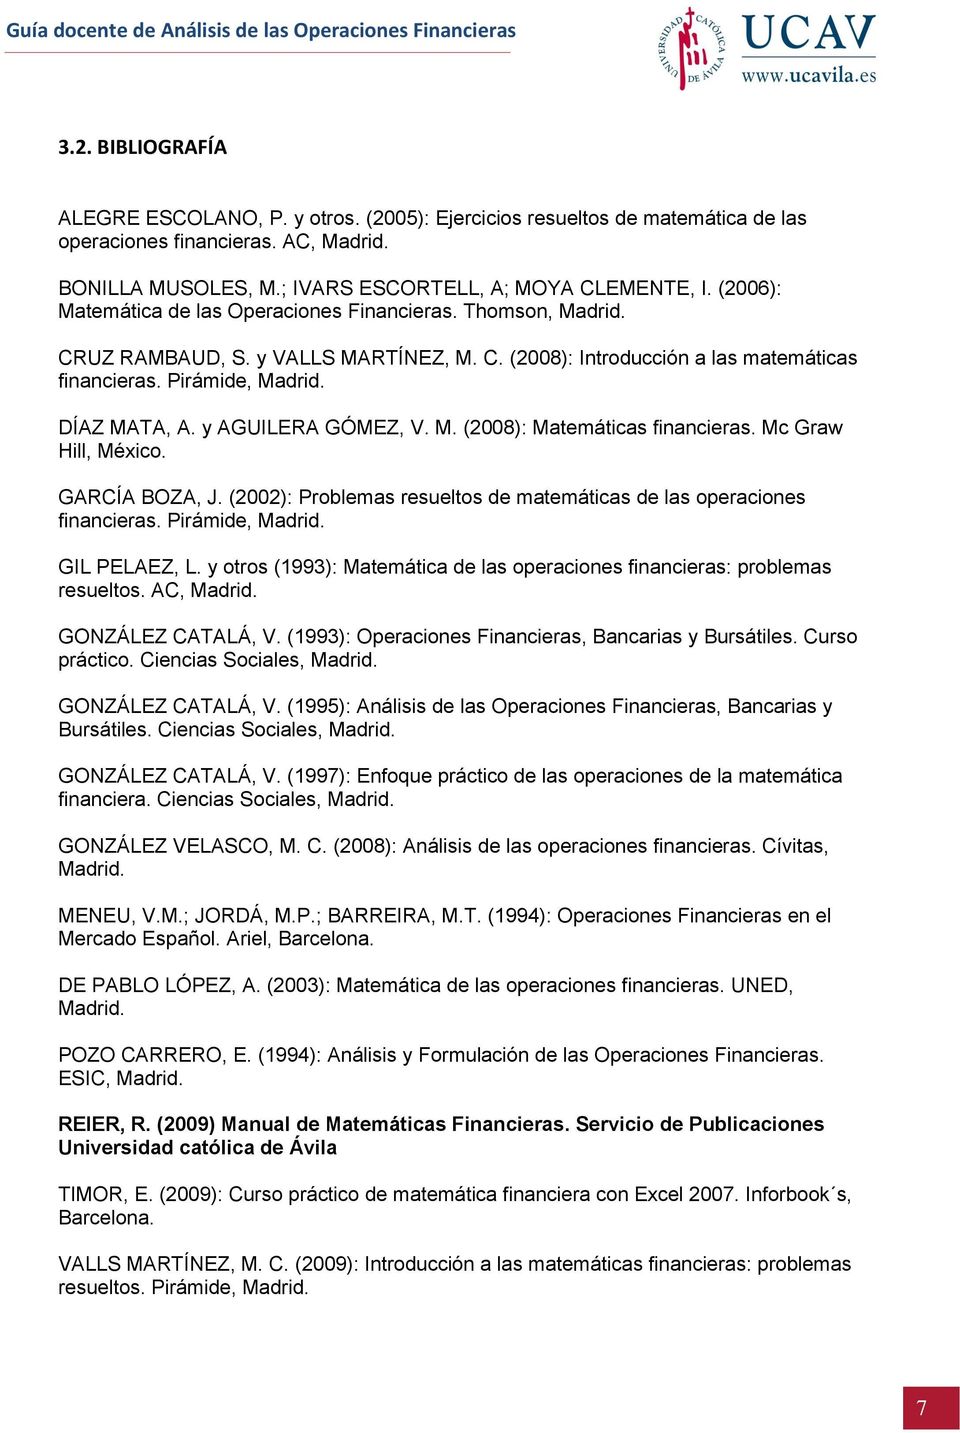 y AGUILERA GÓMEZ, V. M. (2008): Matemáticas financieras. Mc Graw Hill, México. GARCÍA BOZA, J. (2002): Problemas resueltos de matemáticas de las operaciones financieras. Pirámide, Madrid.